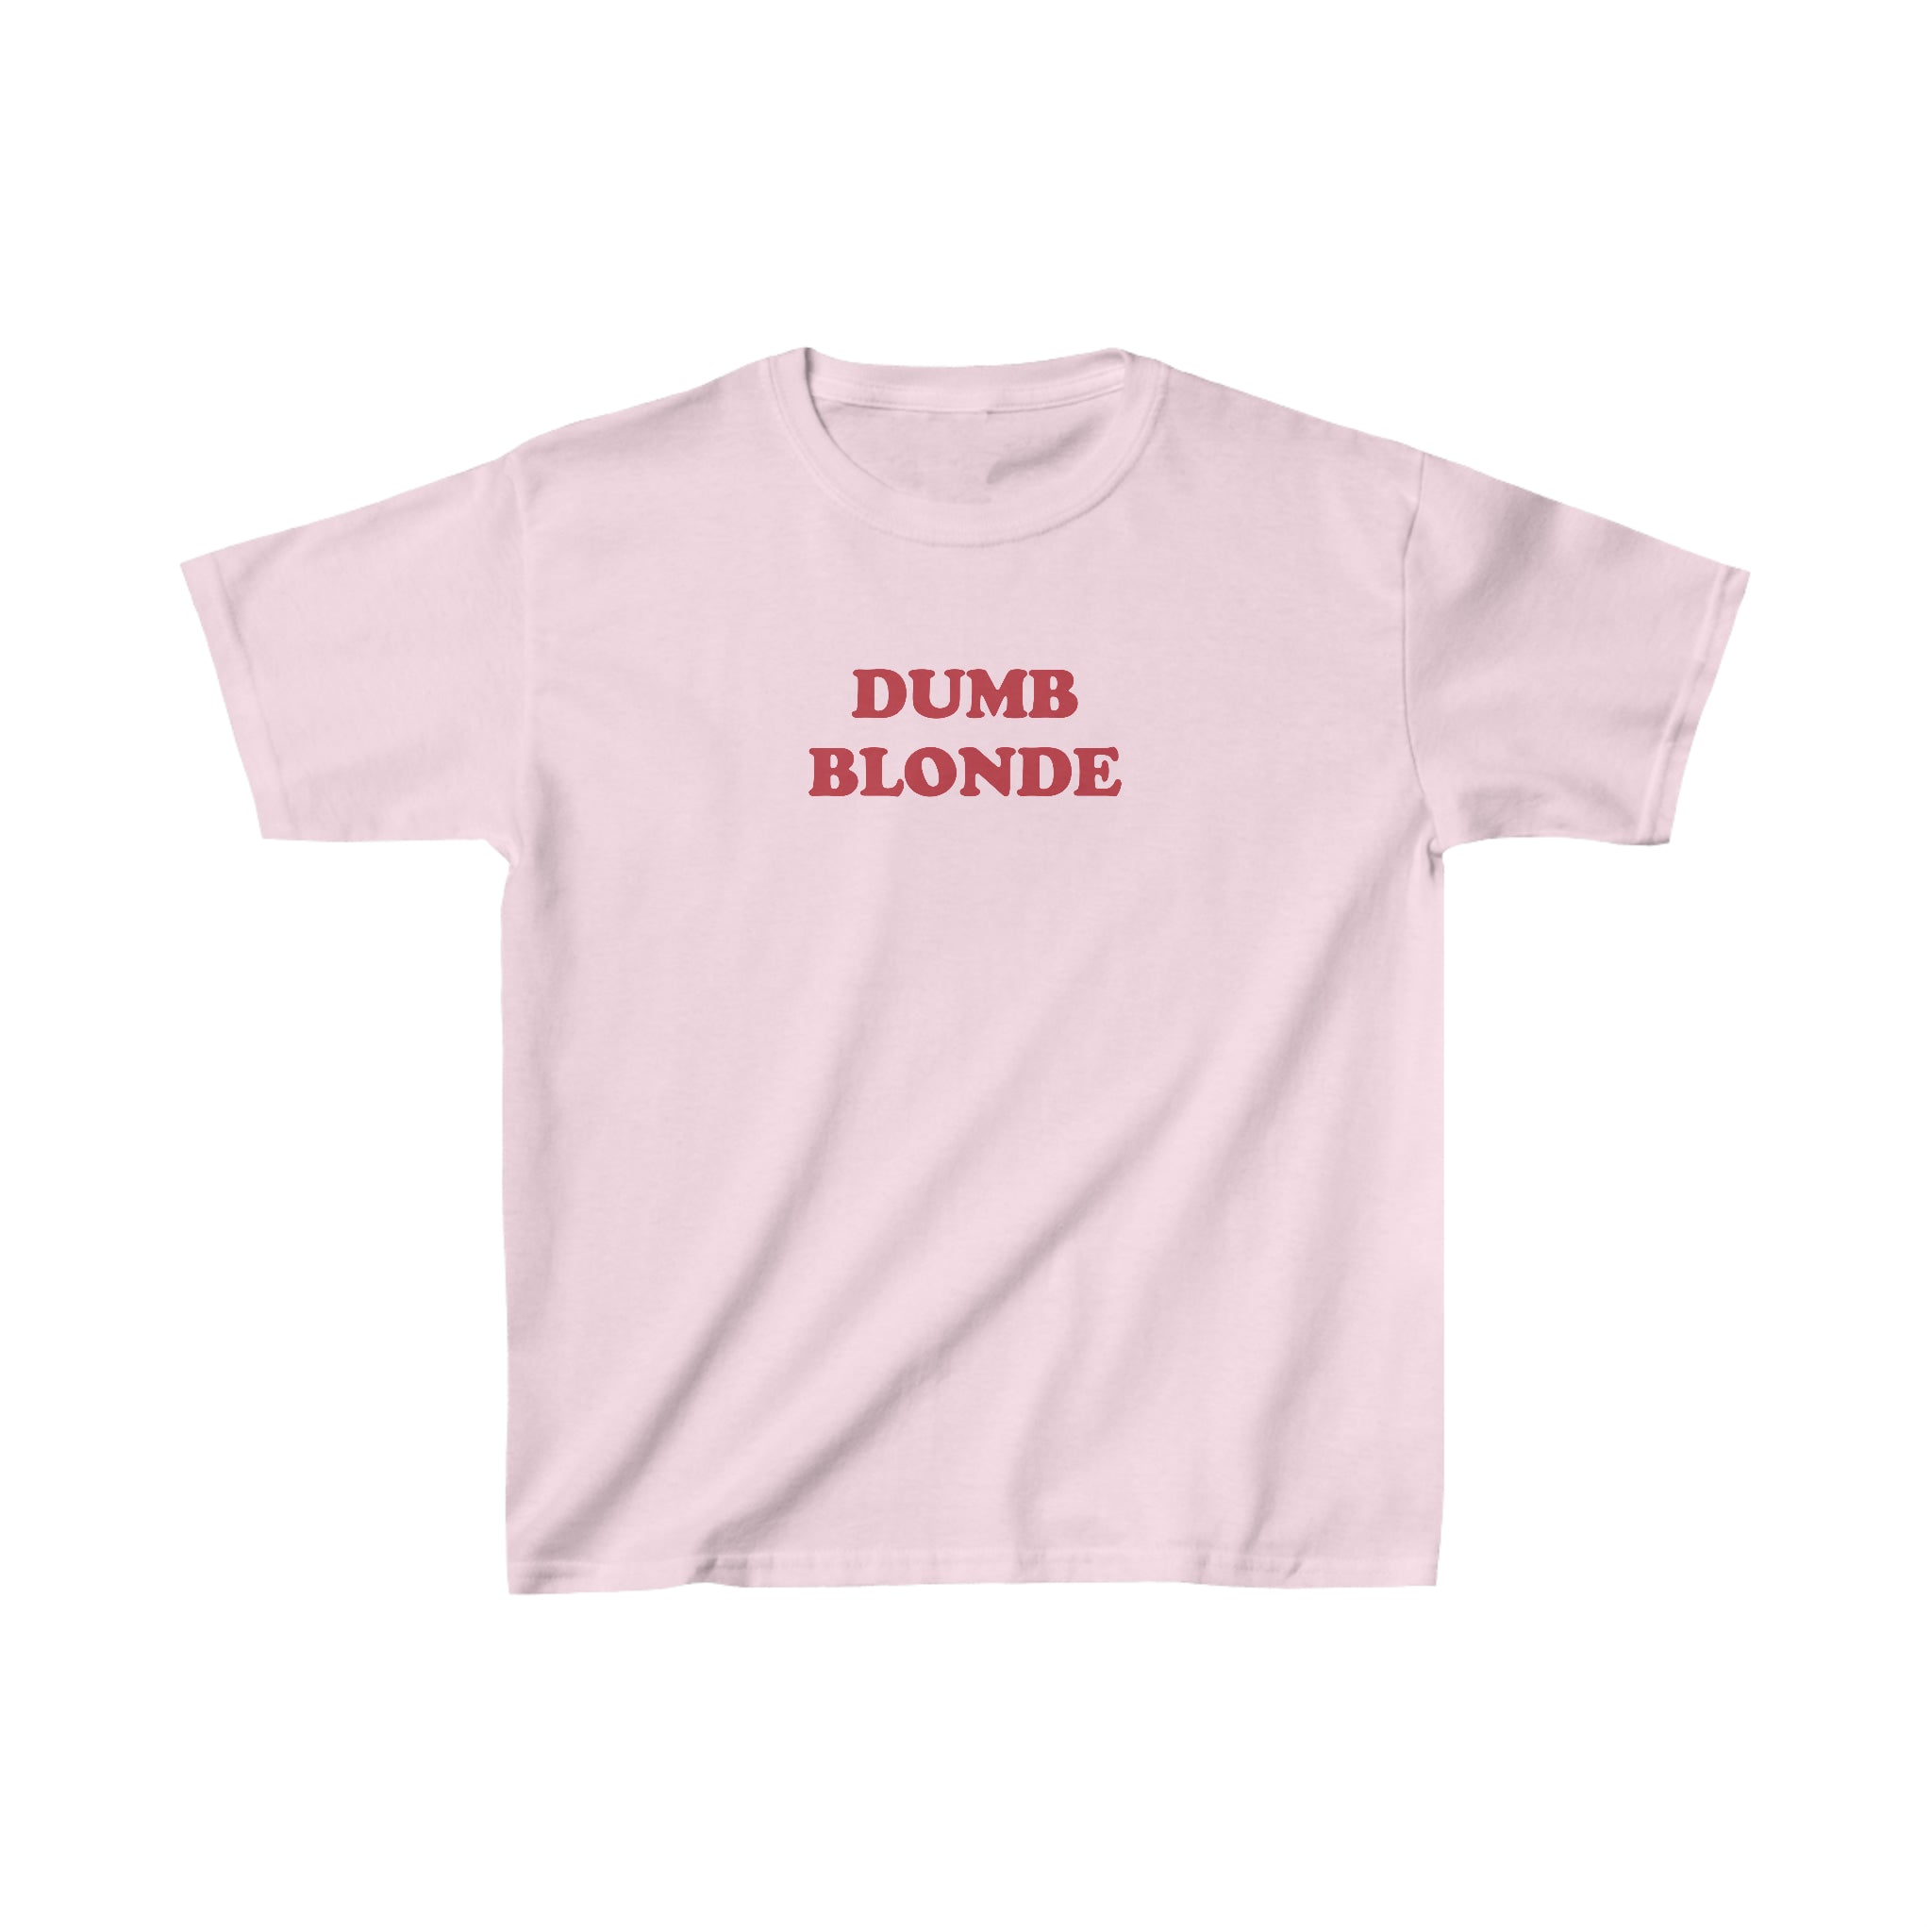 'Dumb Blonde' baby tee - In Print We Trust